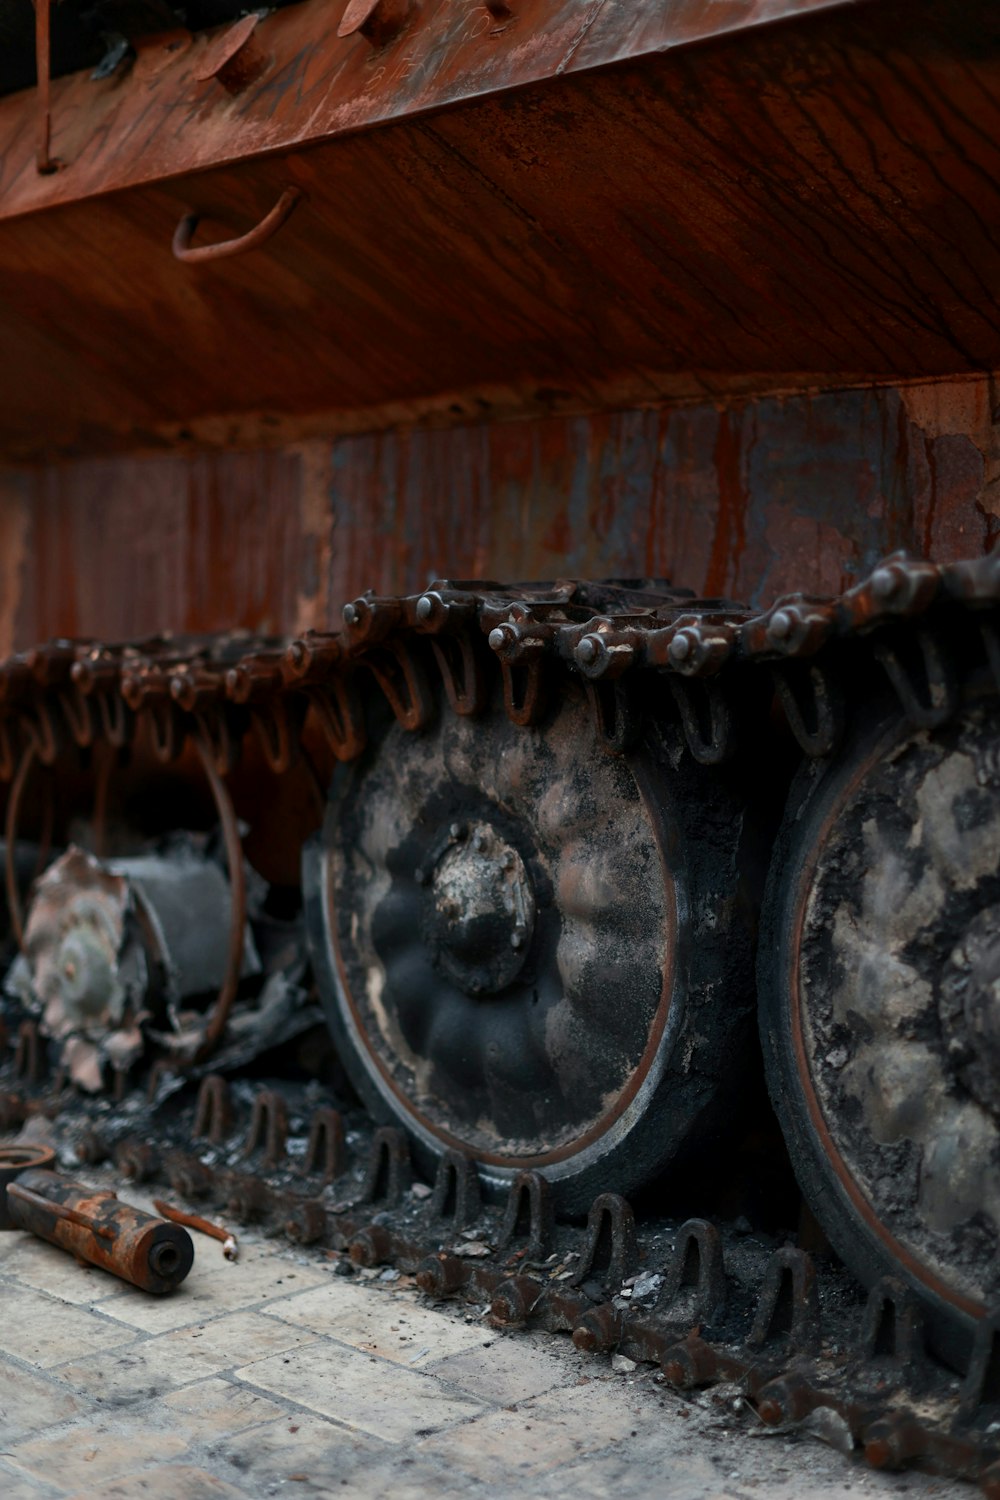 a rusty car engine